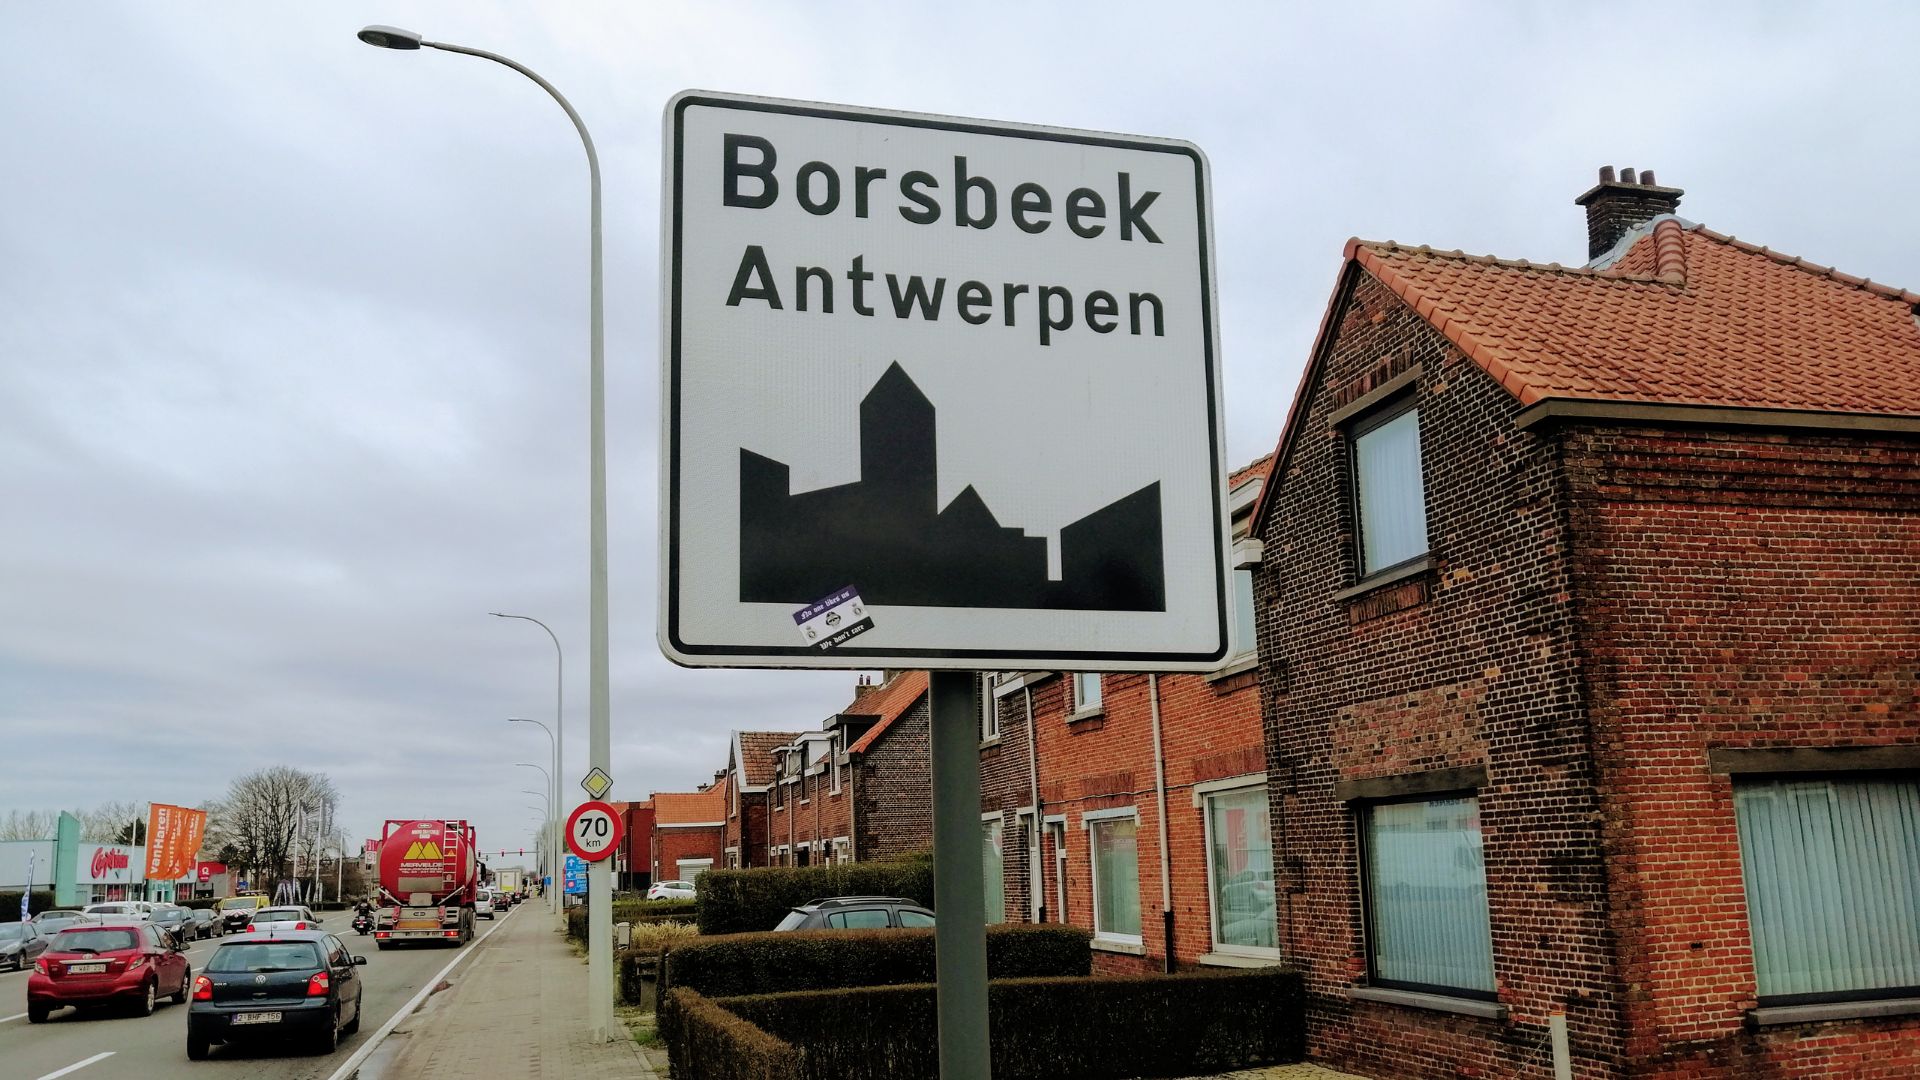 Borsbeek est un village de 11.000 habitants traversé par une grand-route. D’un côté, il y a la ville. De l’autre, le vert avec le fort 3 entouré d’un parc et d’eau.